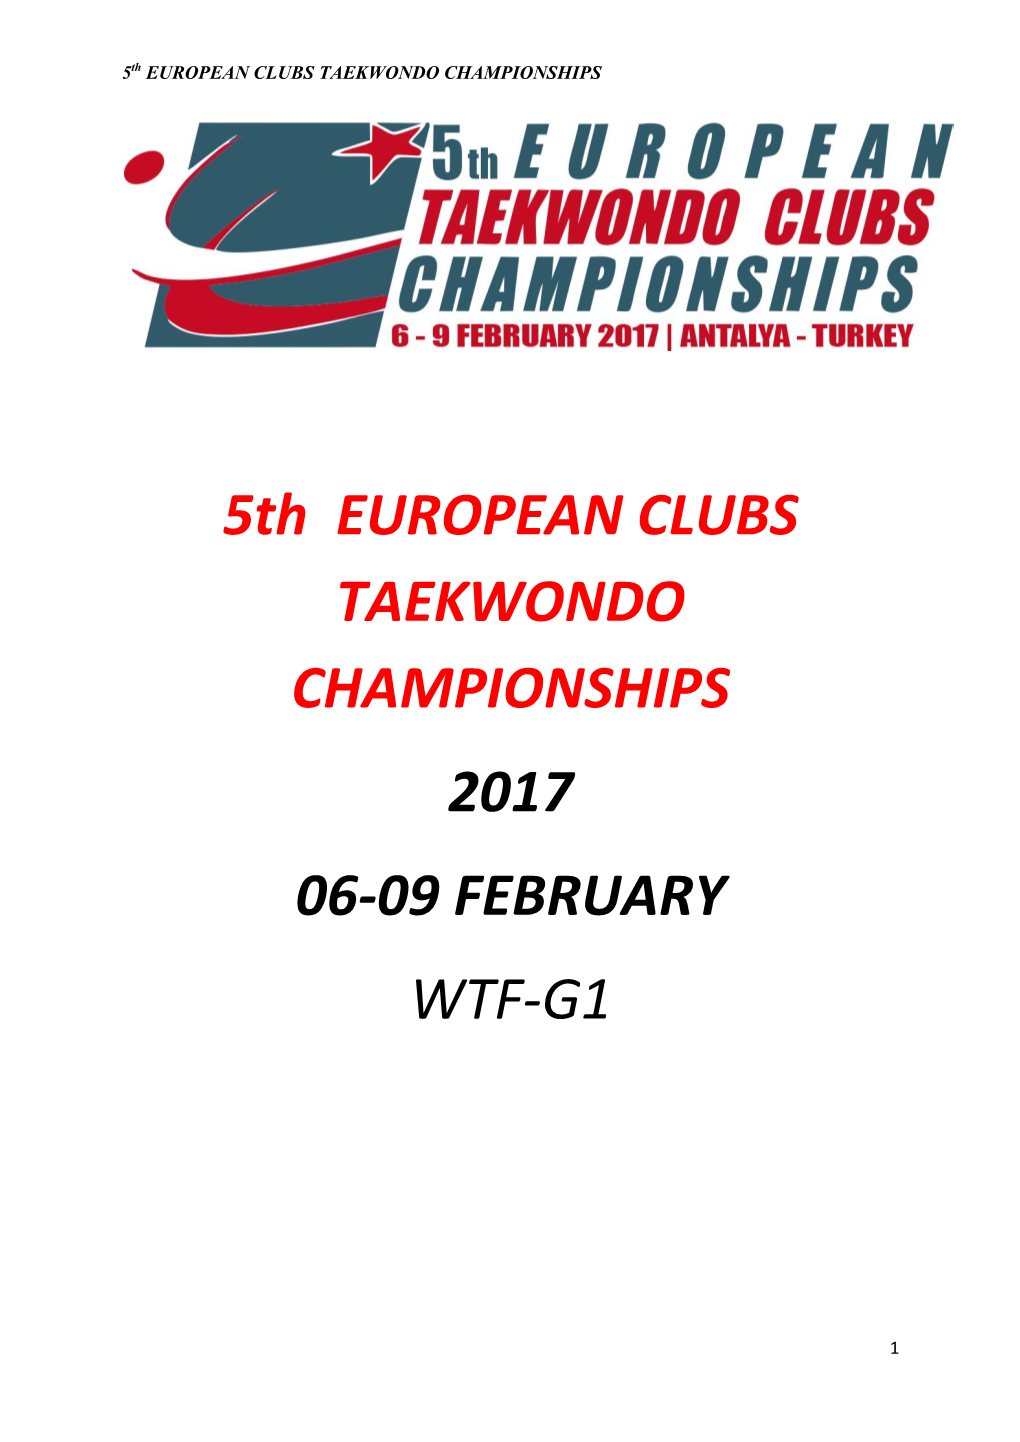 5Th EUROPEAN CLUBS TAEKWONDO CHAMPIONSHIPS